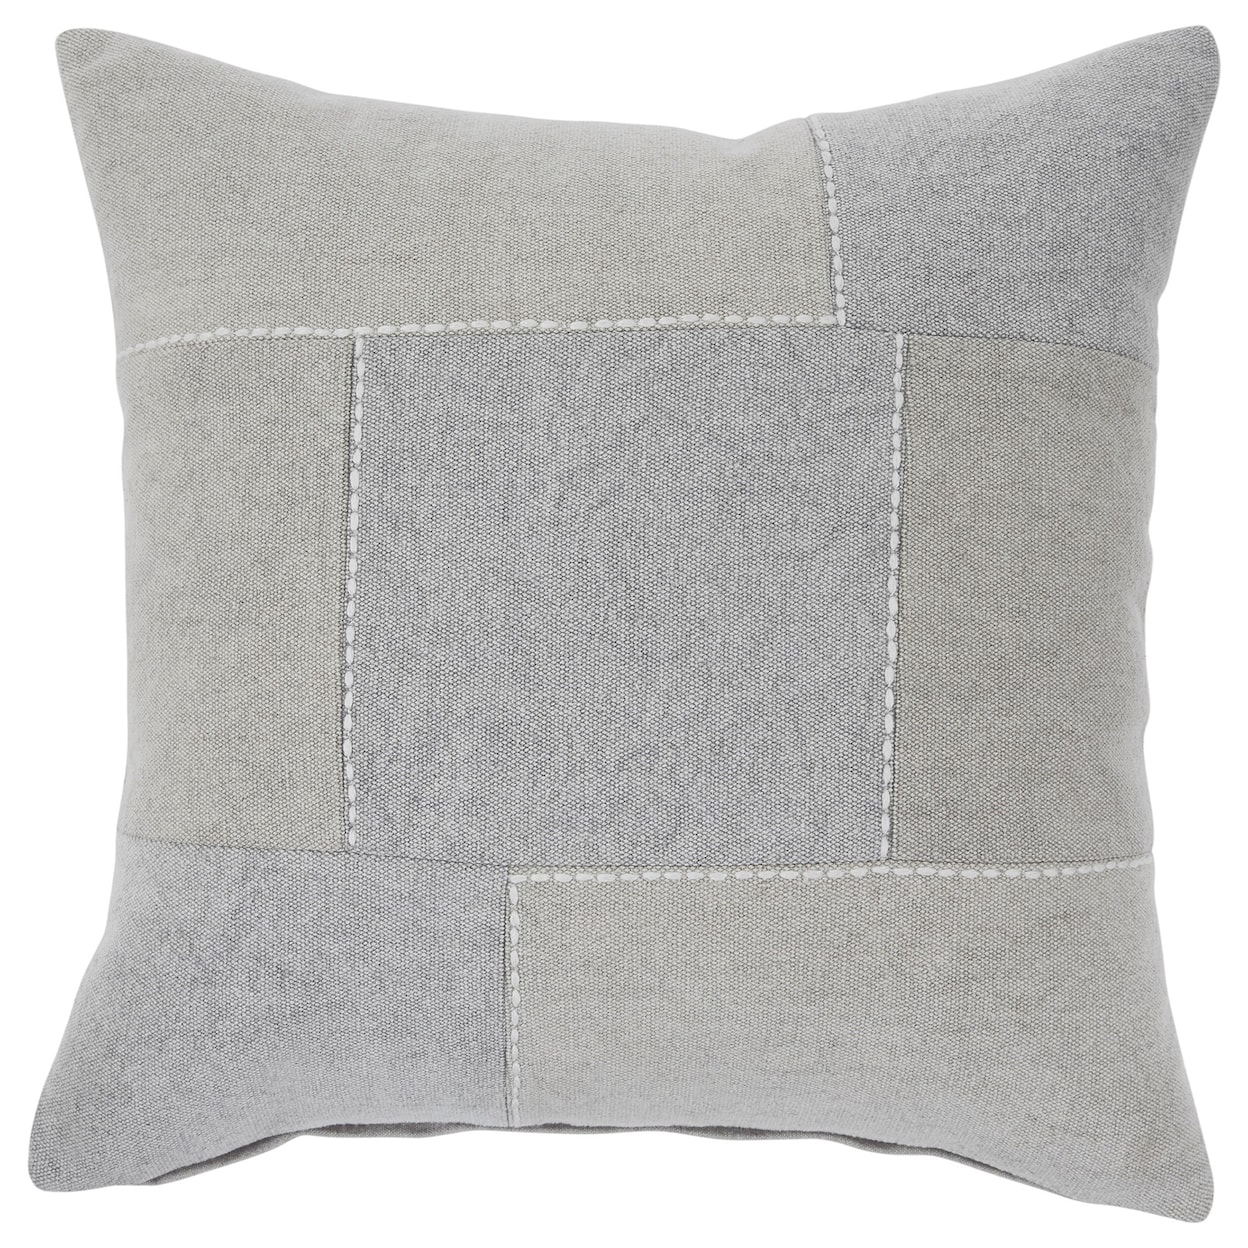 Ashley Signature Design Pillows Lareina Gray/Tan Pillow